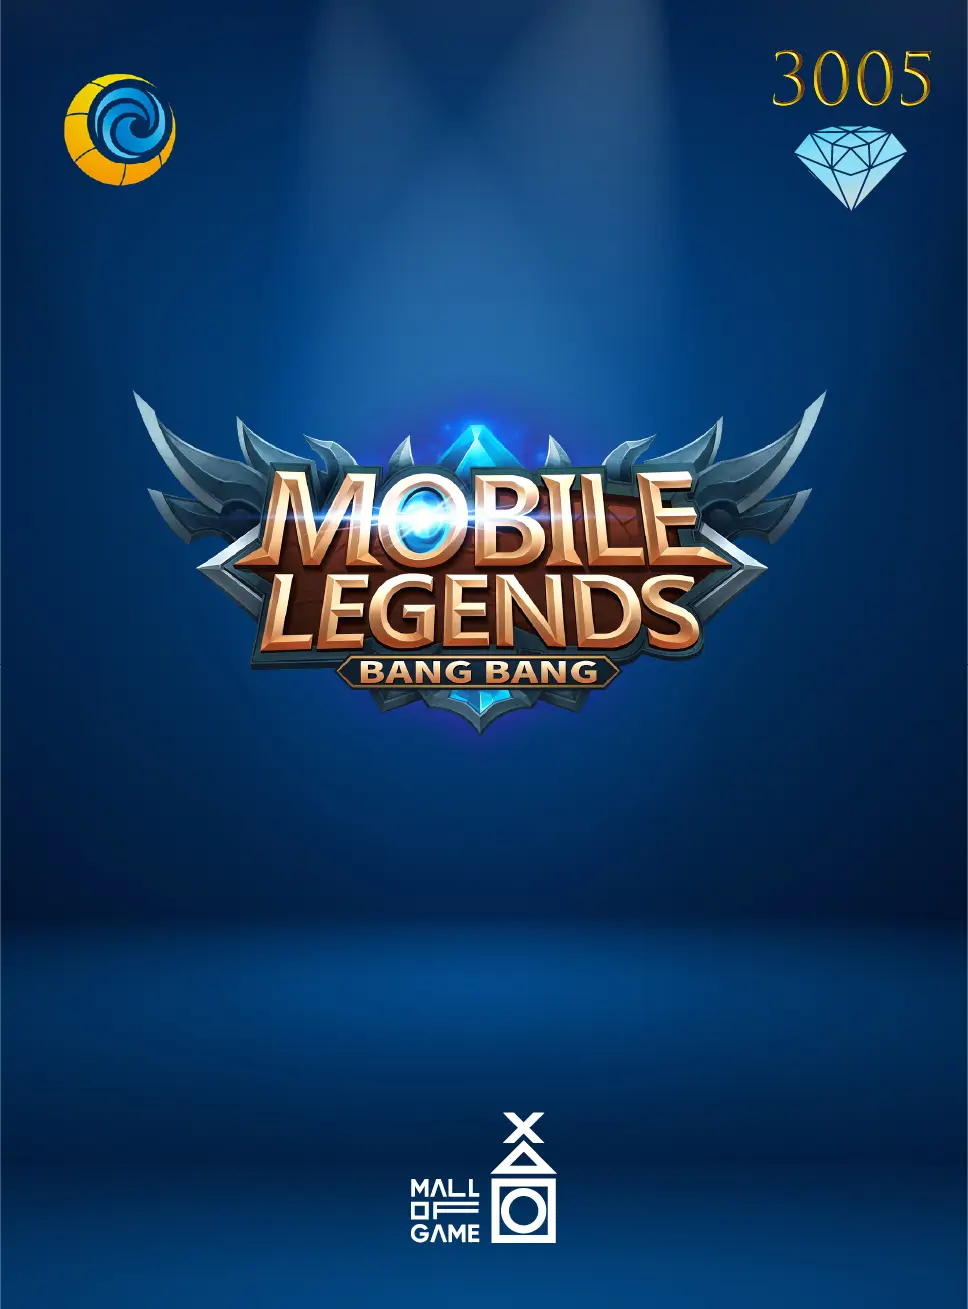 Mobile Legends 3005 Diamond